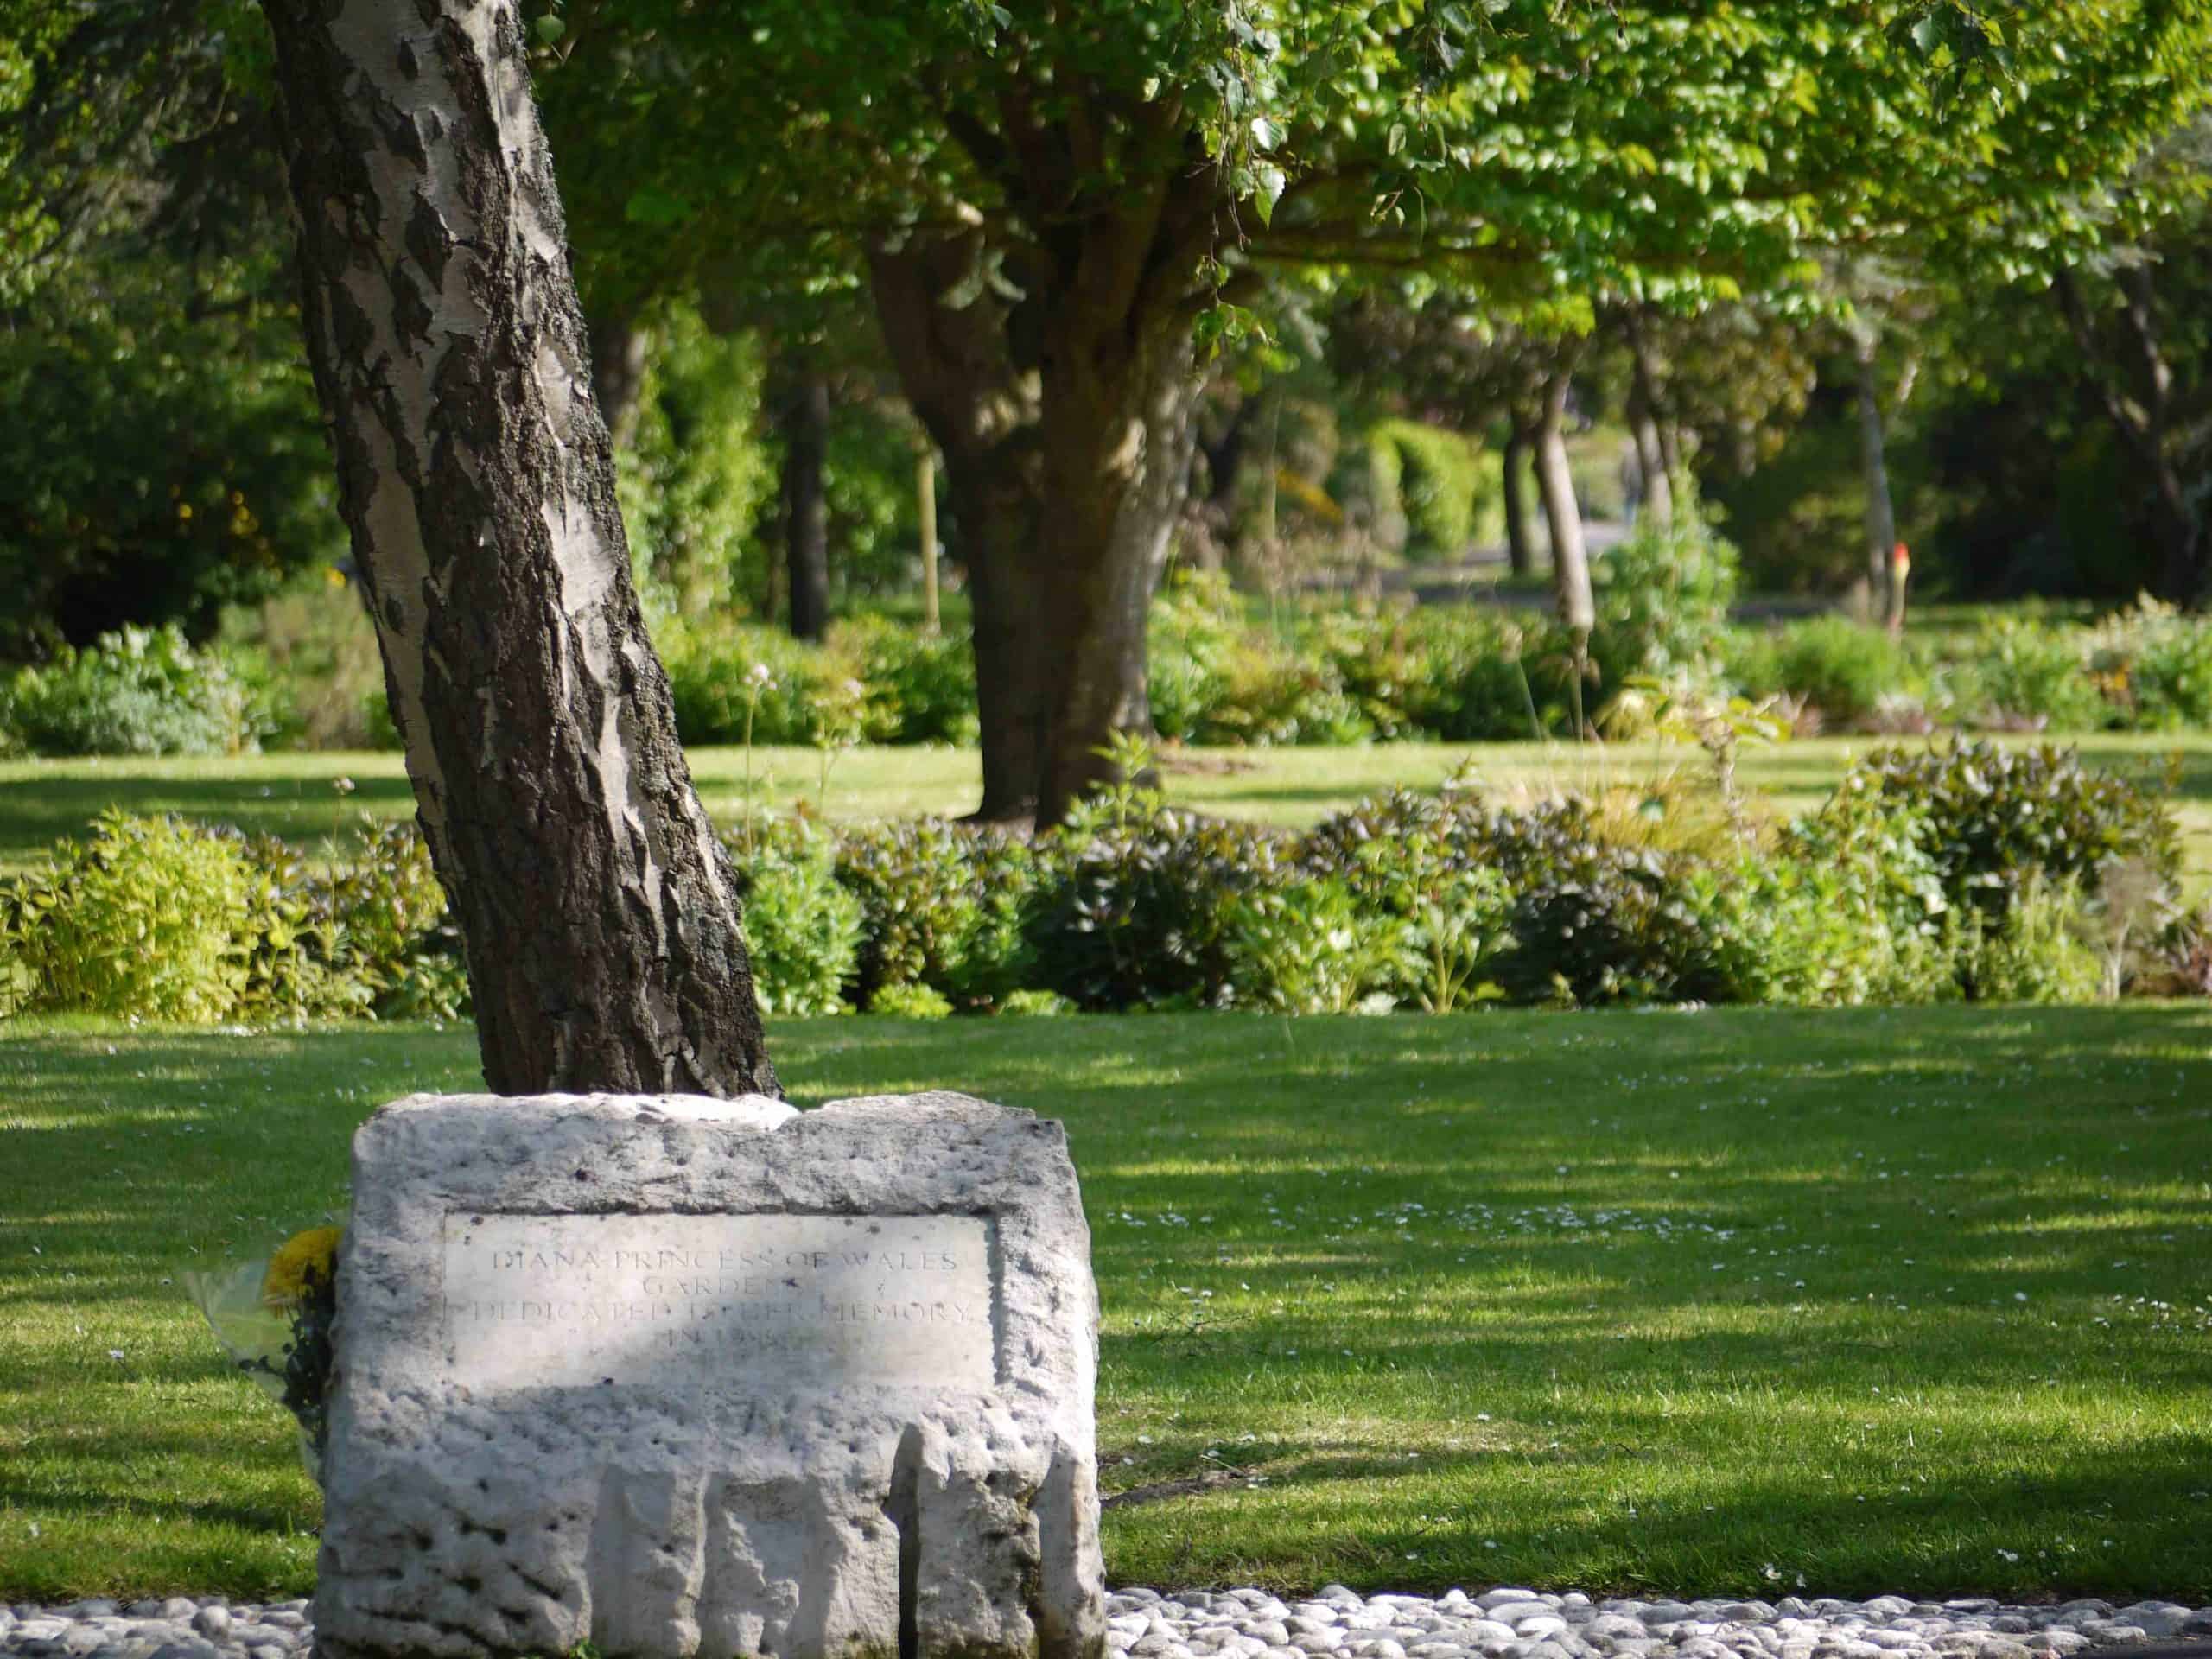 Princess Diana memorial stone Radipole gardens